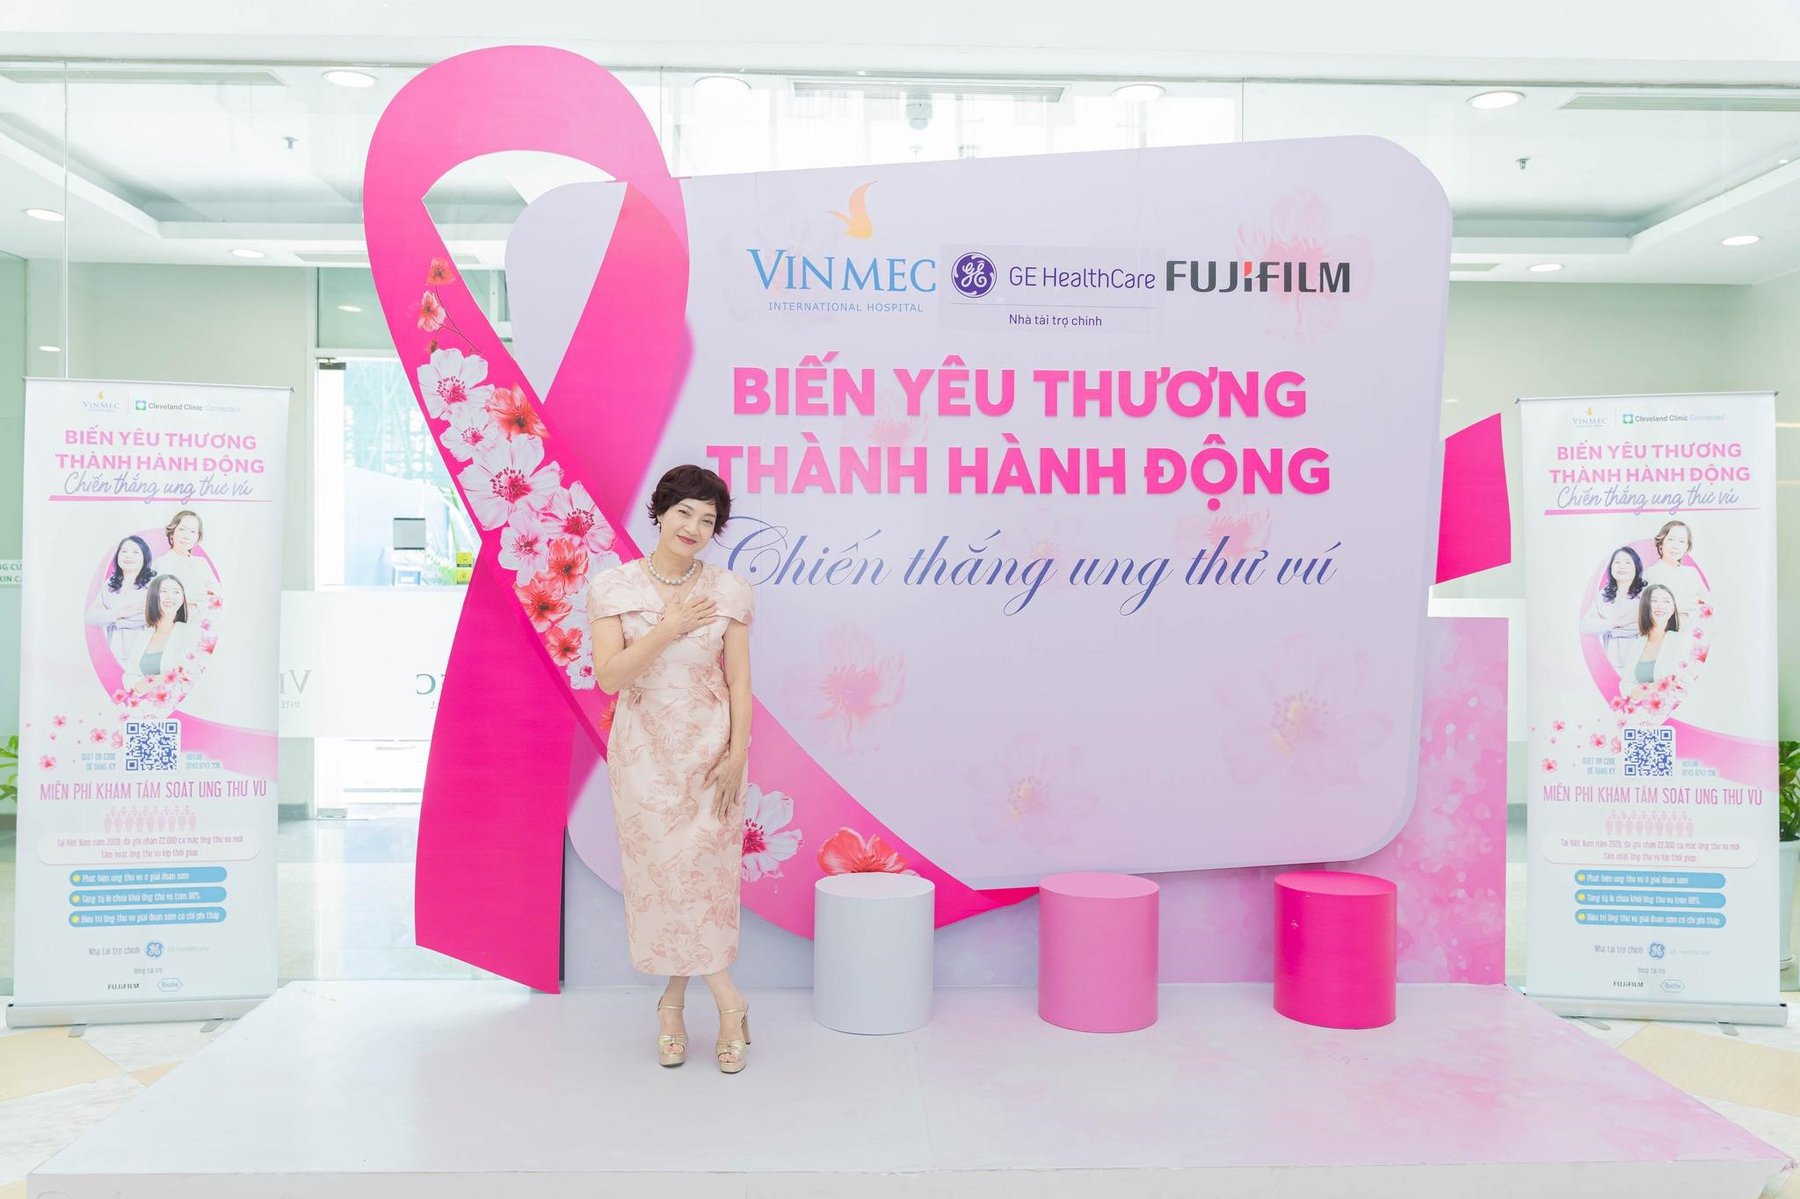 Tại chiến dịch PinkWin, NSND Lê Khanh xuất hiện tinh tế với chiếc đầm hồng sang trọng và tone-sur-tone với màu của chiếc nơ hồng, biểu tượng cho niềm hy vọng, sức mạnh và sự đồng lòng chống ung thư vú